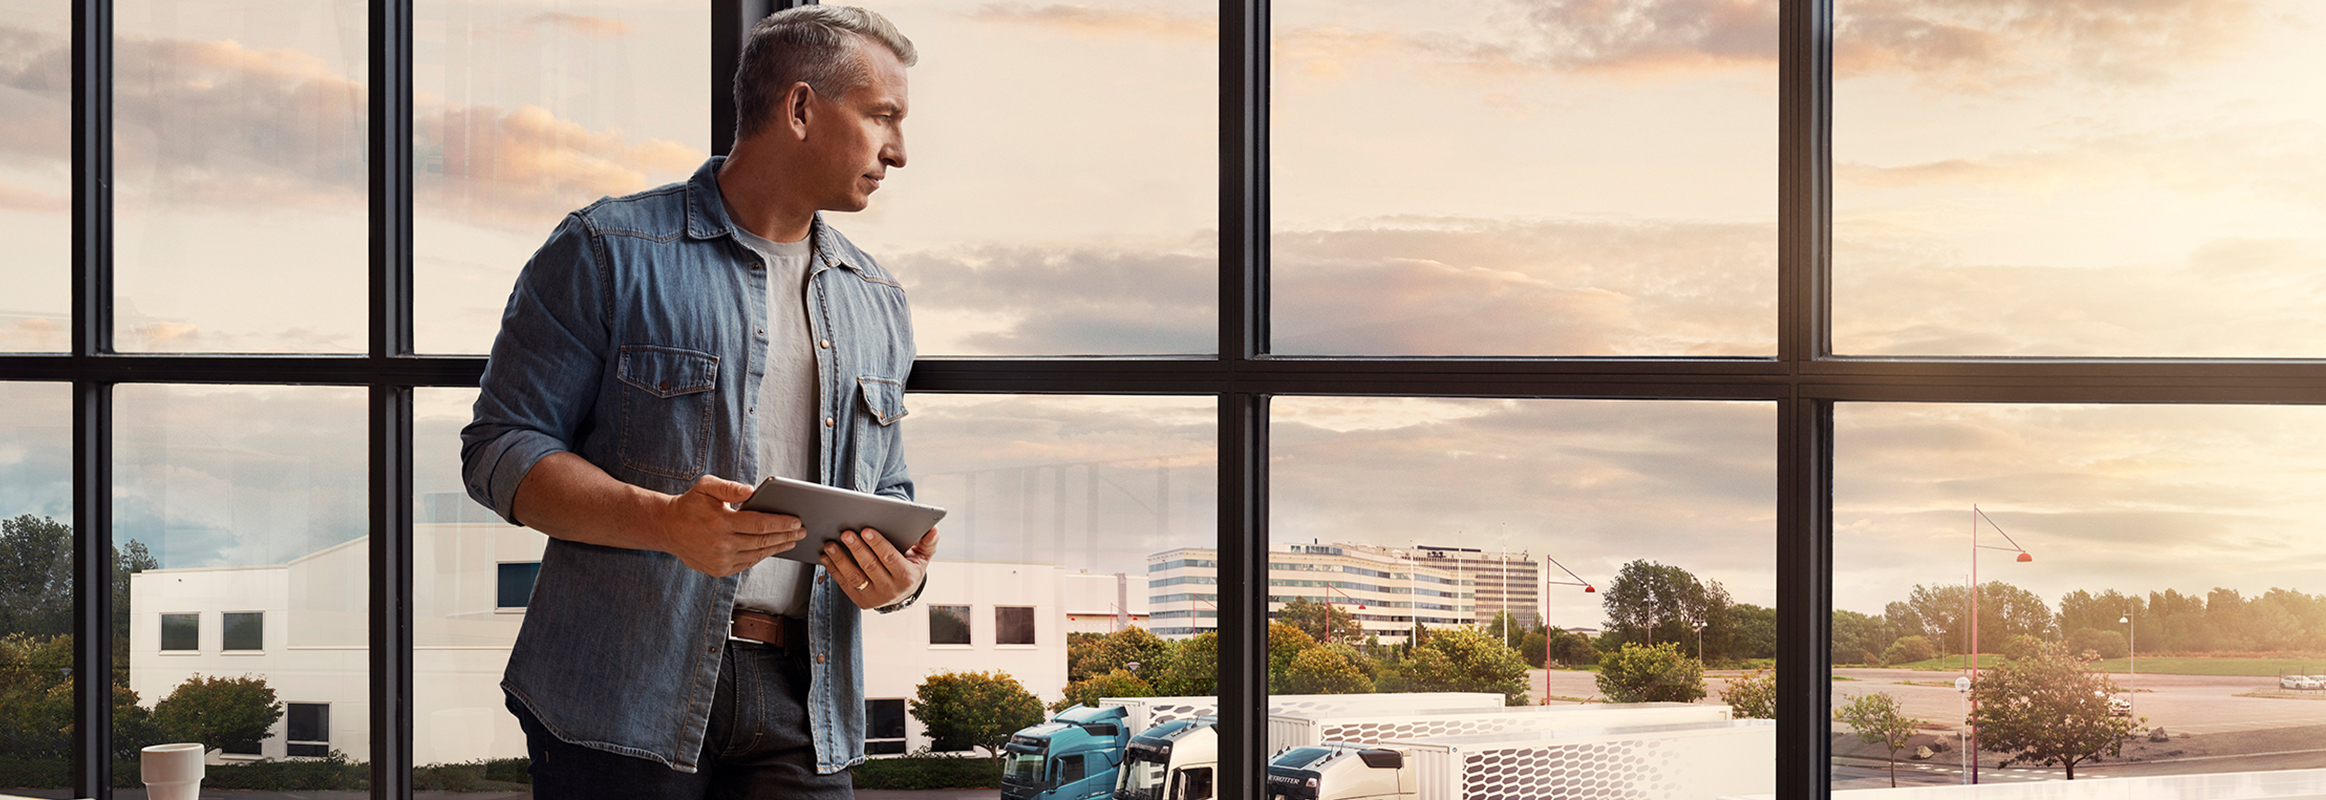 Planšetinį kompiuterį laikantis vyras stovi prie lango ir žvelgia žemyn į savo sunkvežimių parką